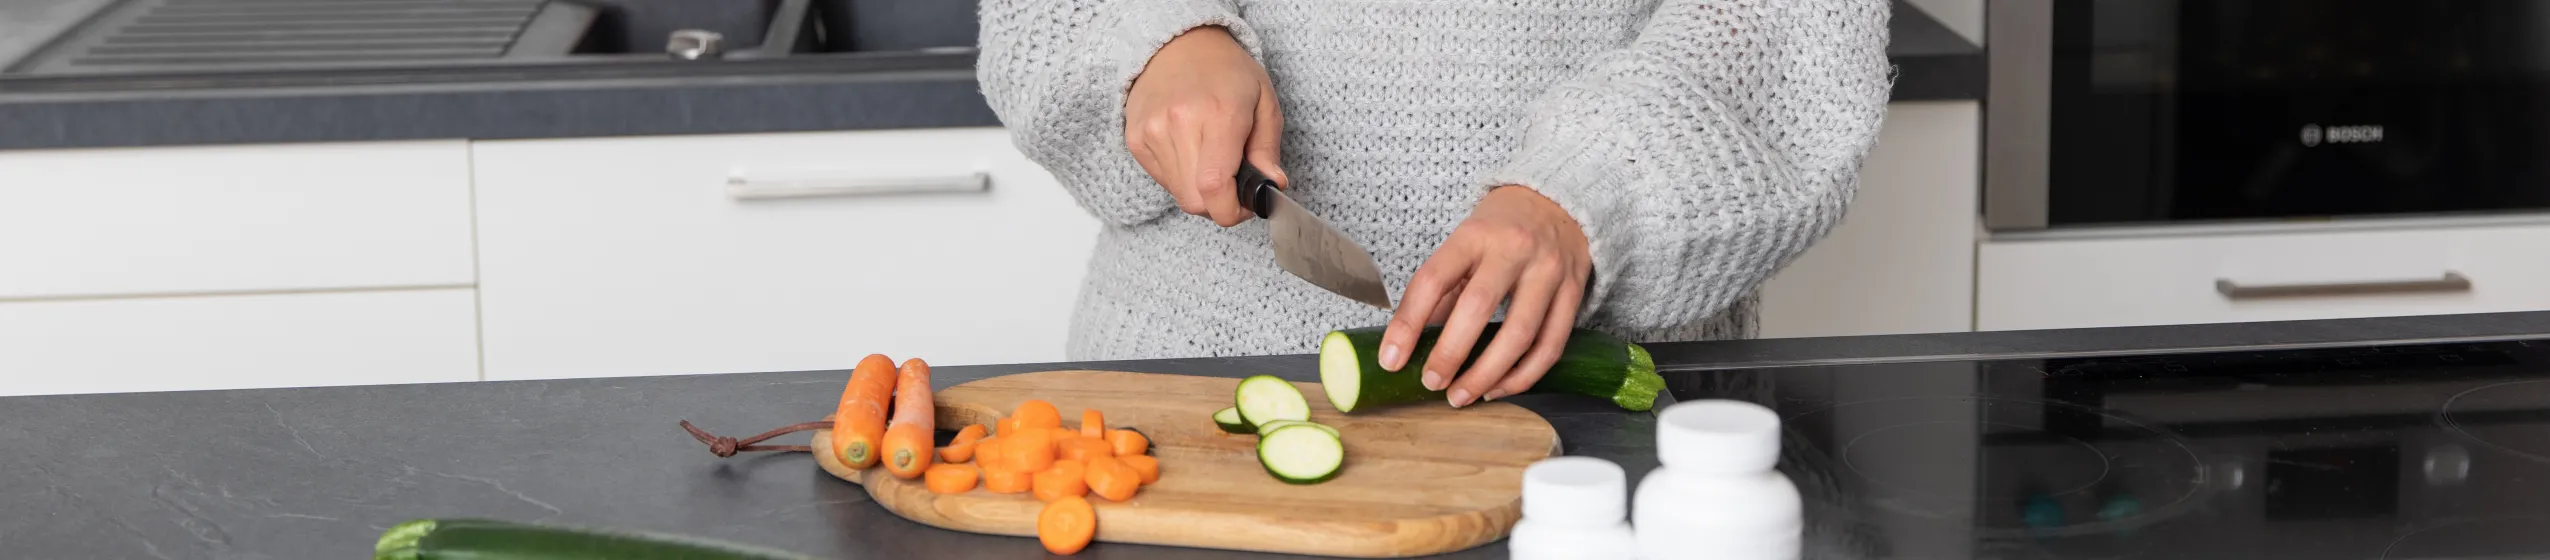 Frau schneidet Gemüse in der Küche